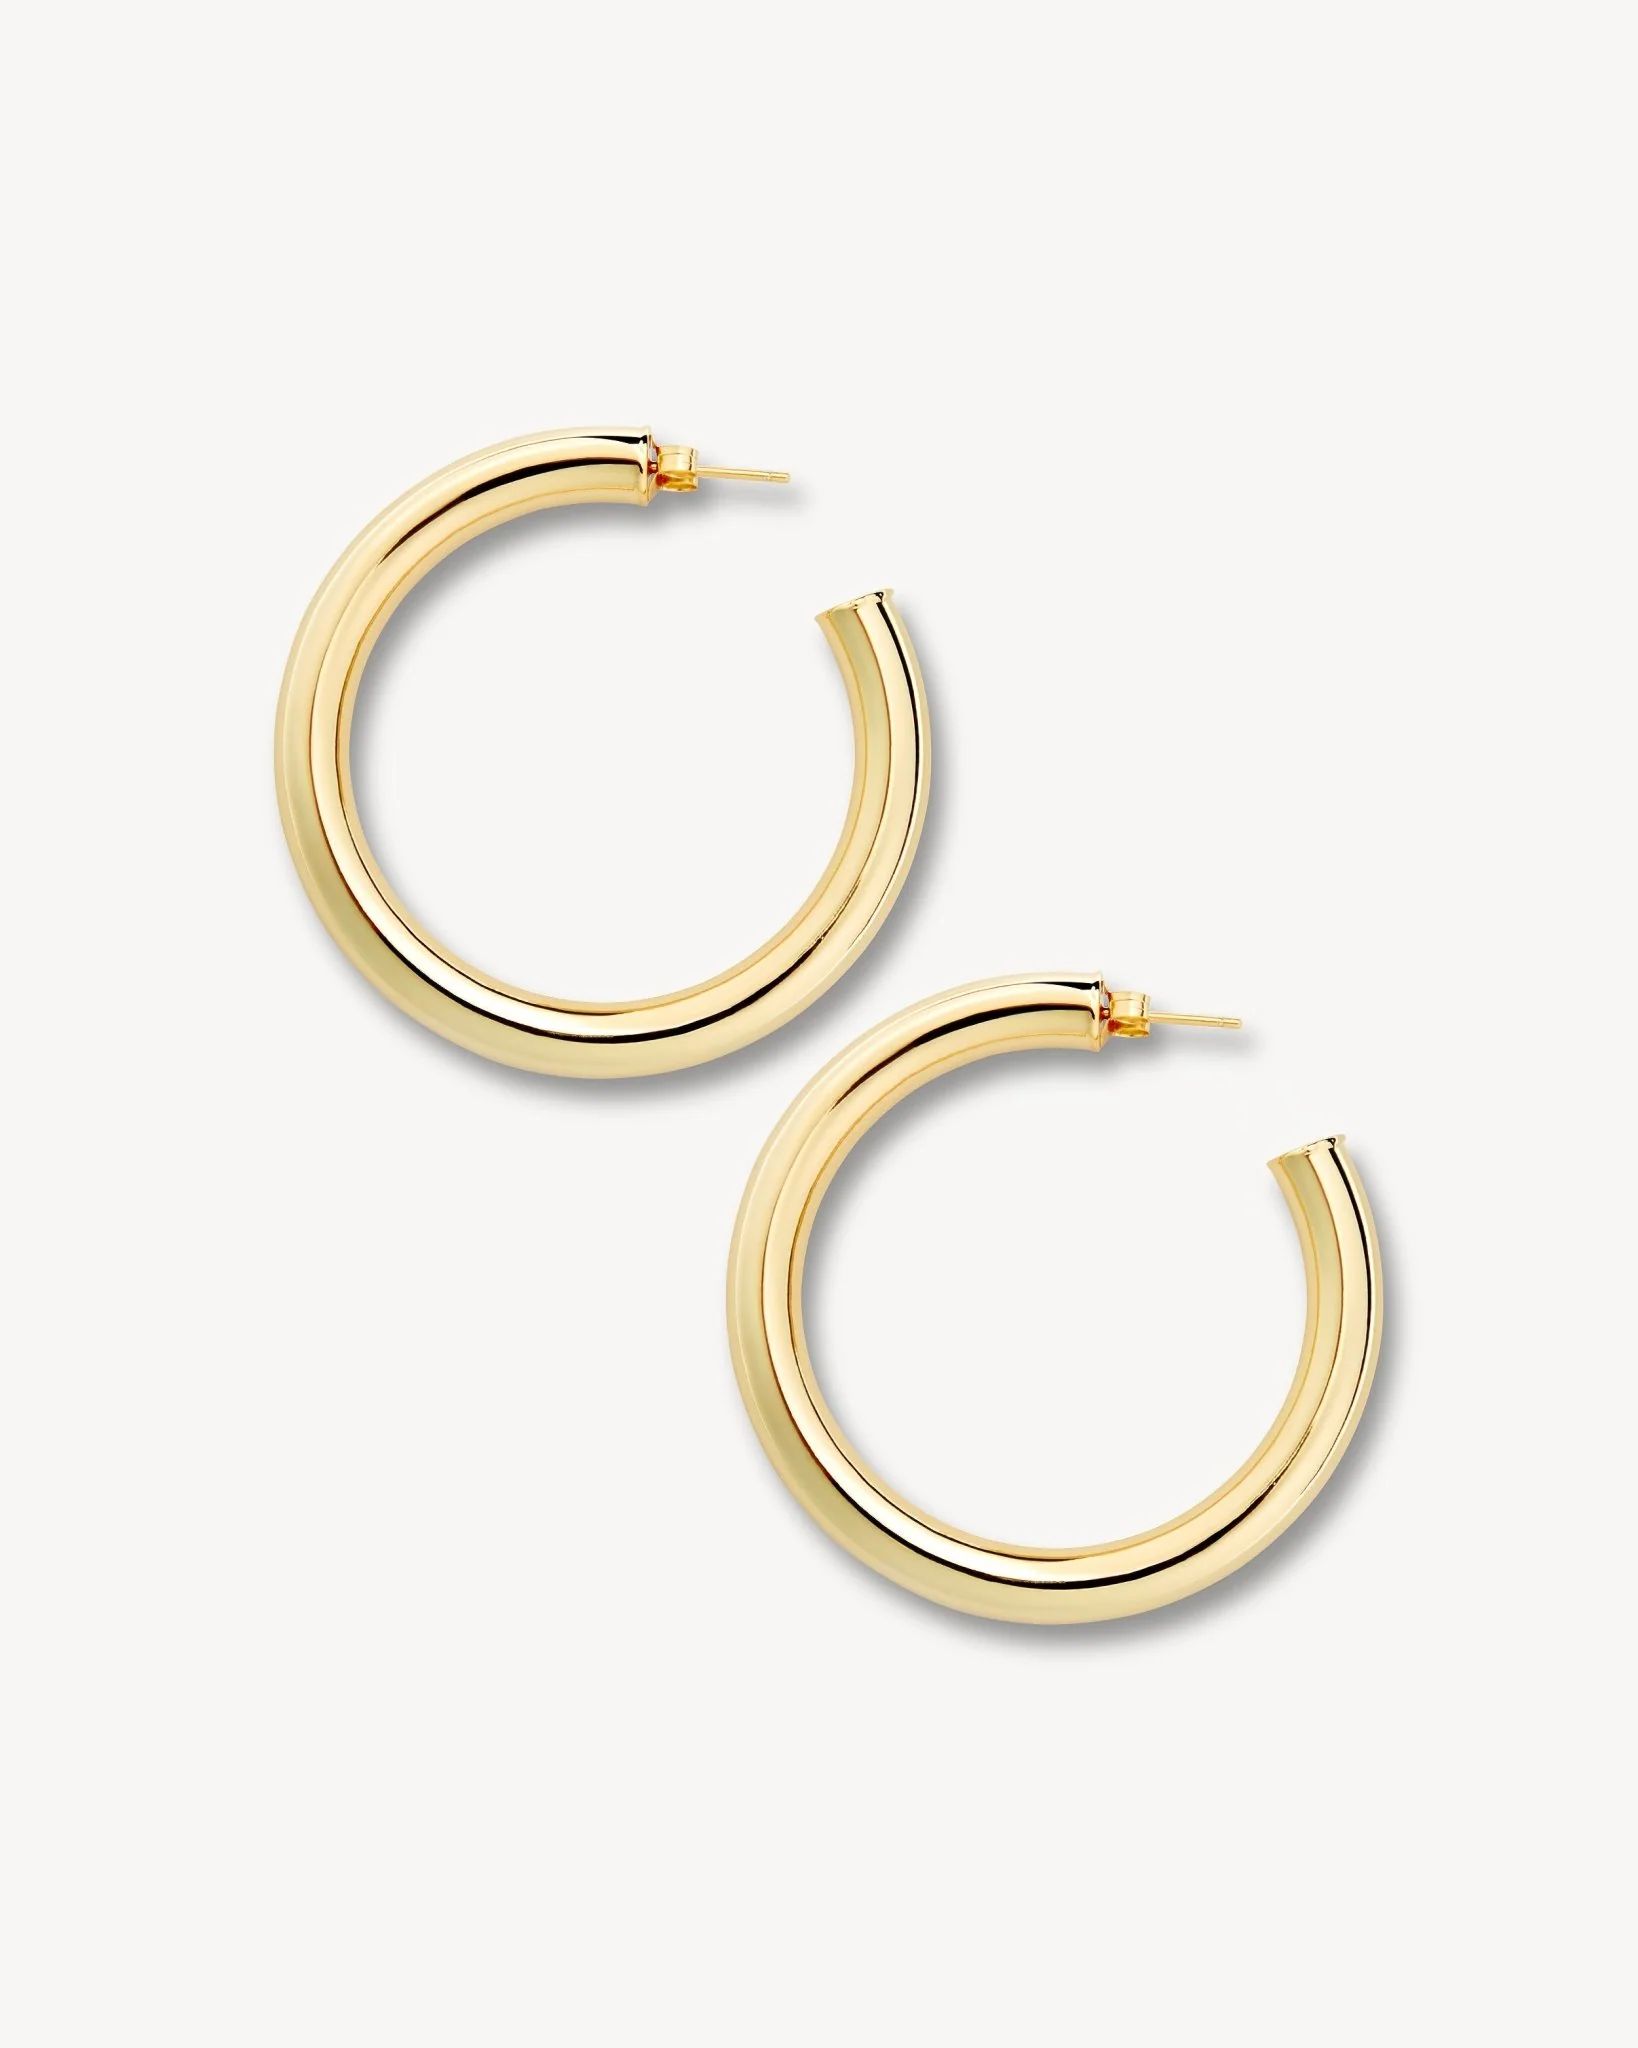 Machete Large Gold Hoops Earrings | Machete